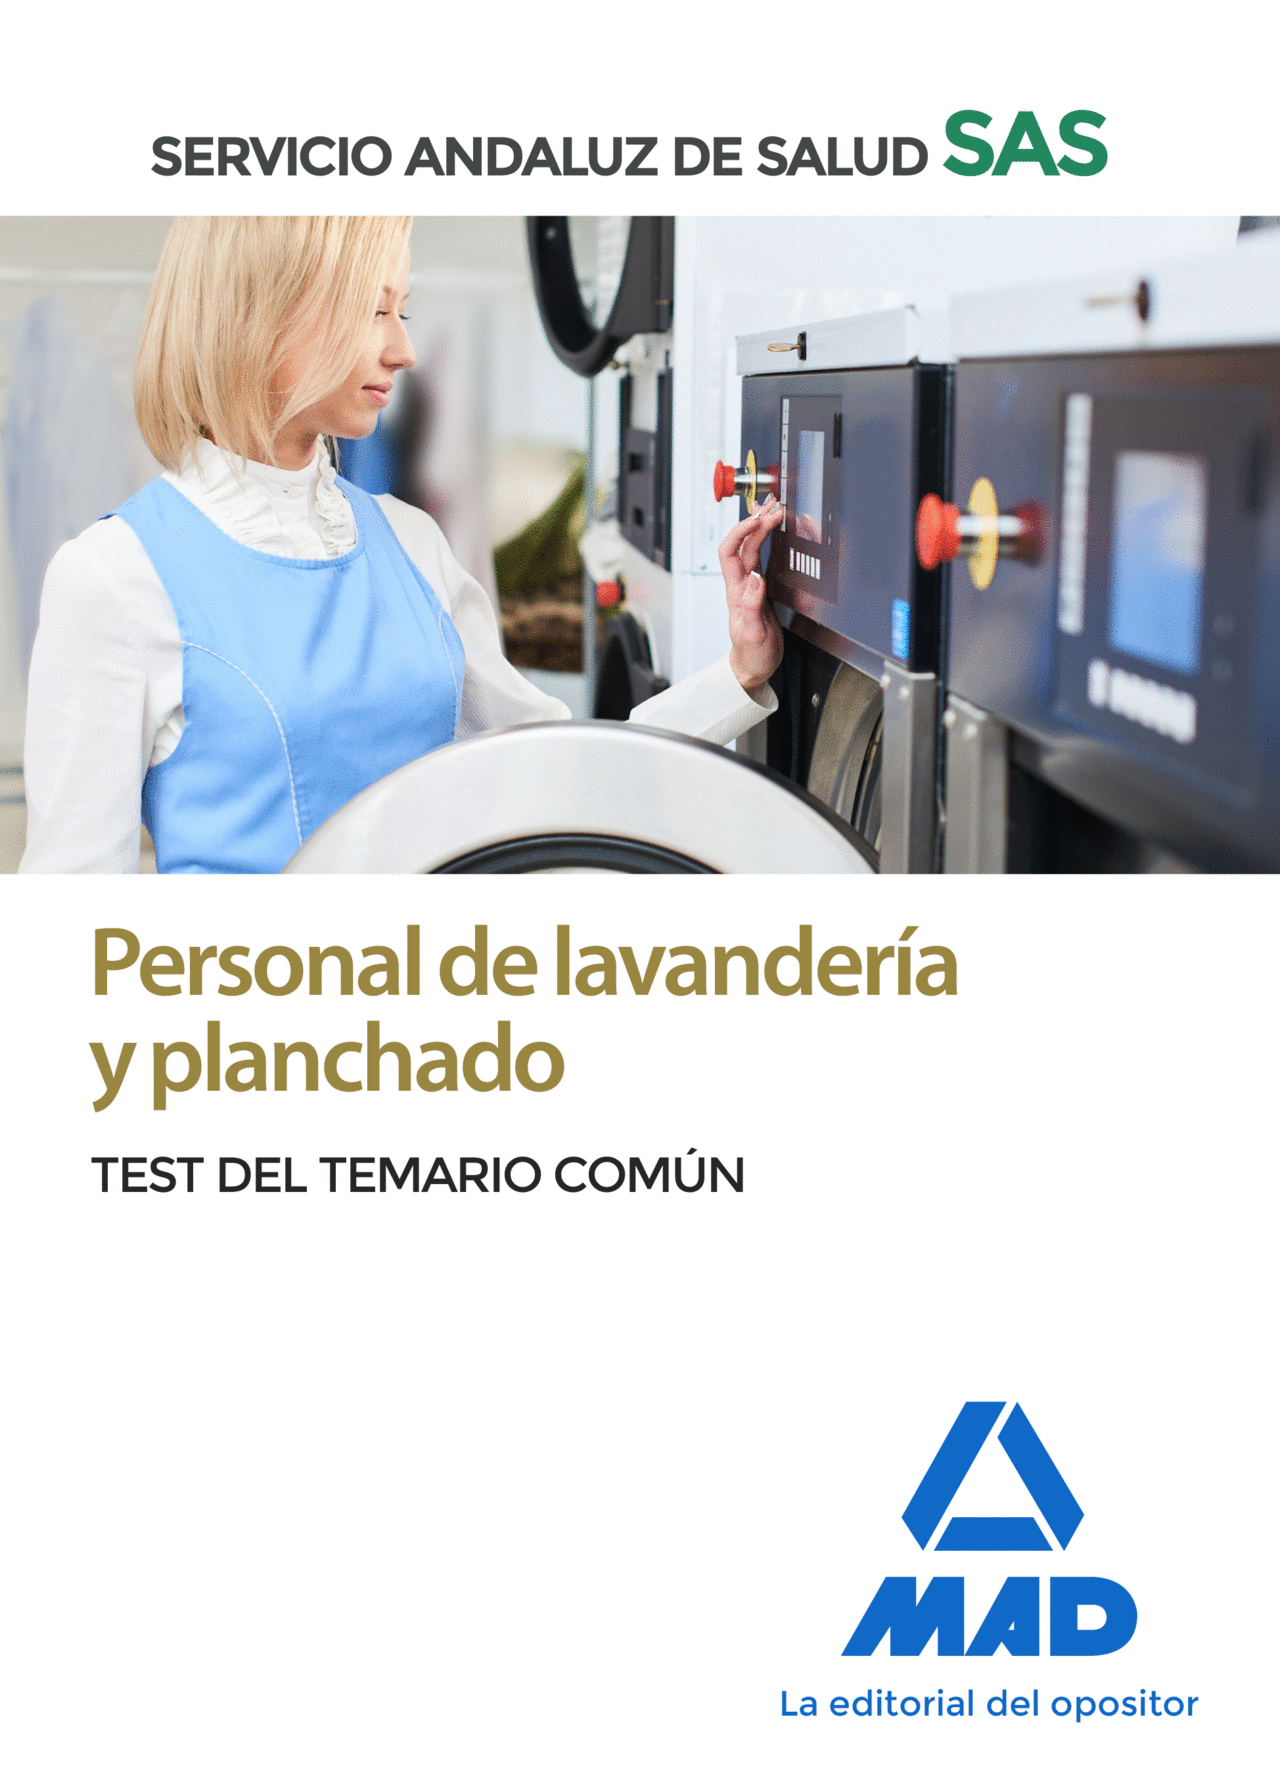 PERSONAL DE LAVANDERÍA Y PLANCHADO DEL SERVICIO ANDALUZ DE SALUD. TEST COMÚN